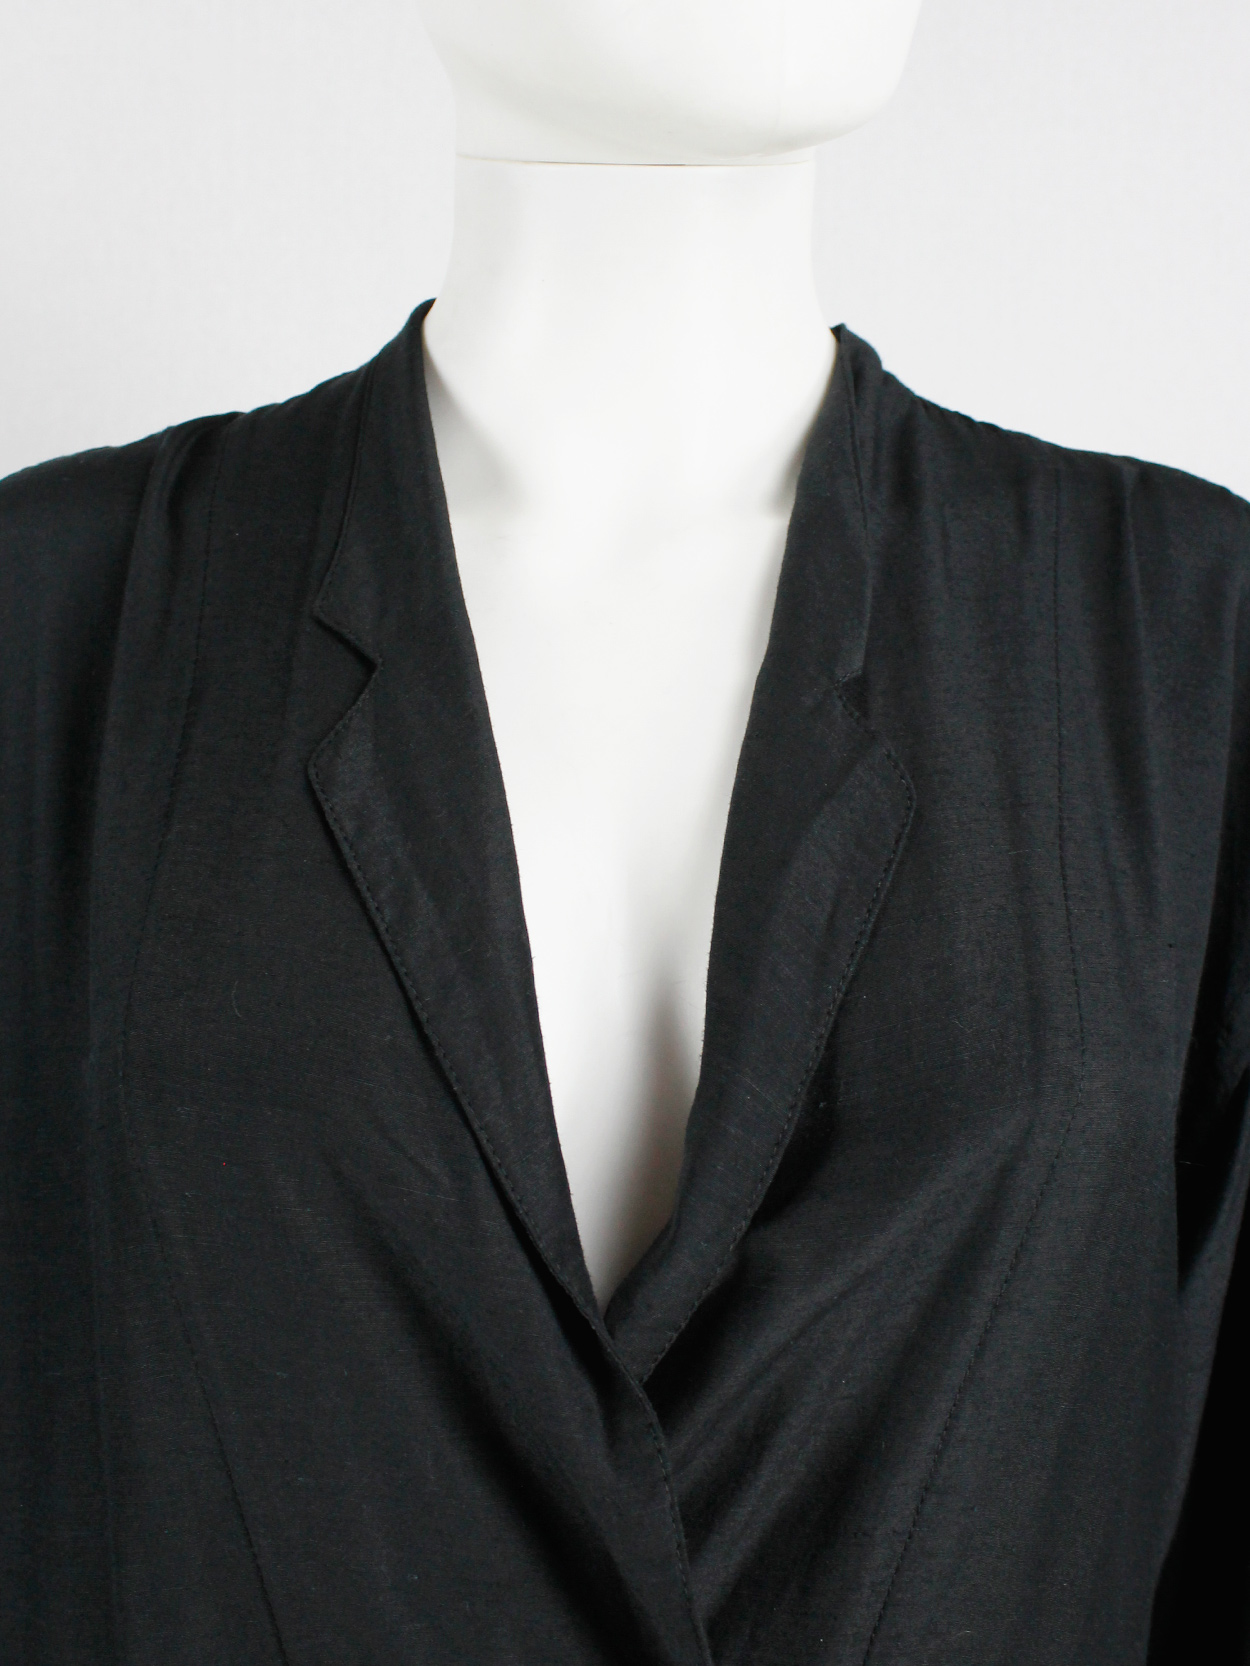 Ys Yohji Yamamoto black loose shirtdress with lapels 1980s (3)